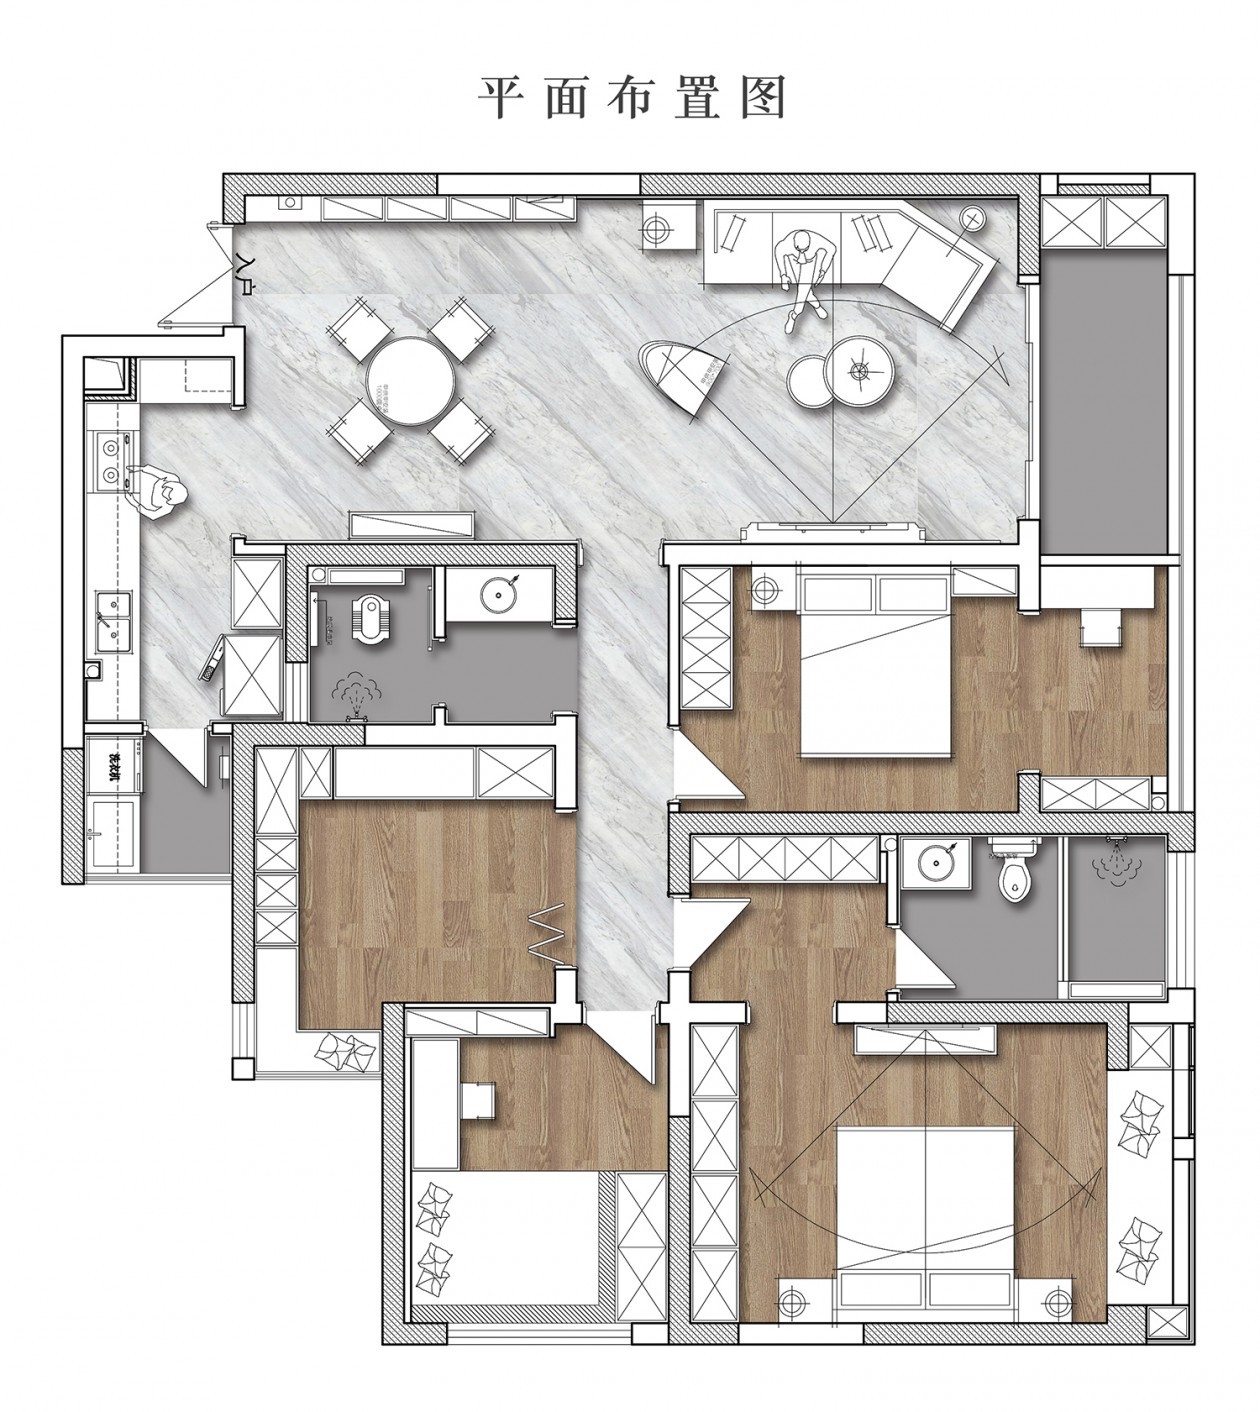 130现代三房装修效果图,烟火气与ga级感的平衡点装修案例效果图-美广网